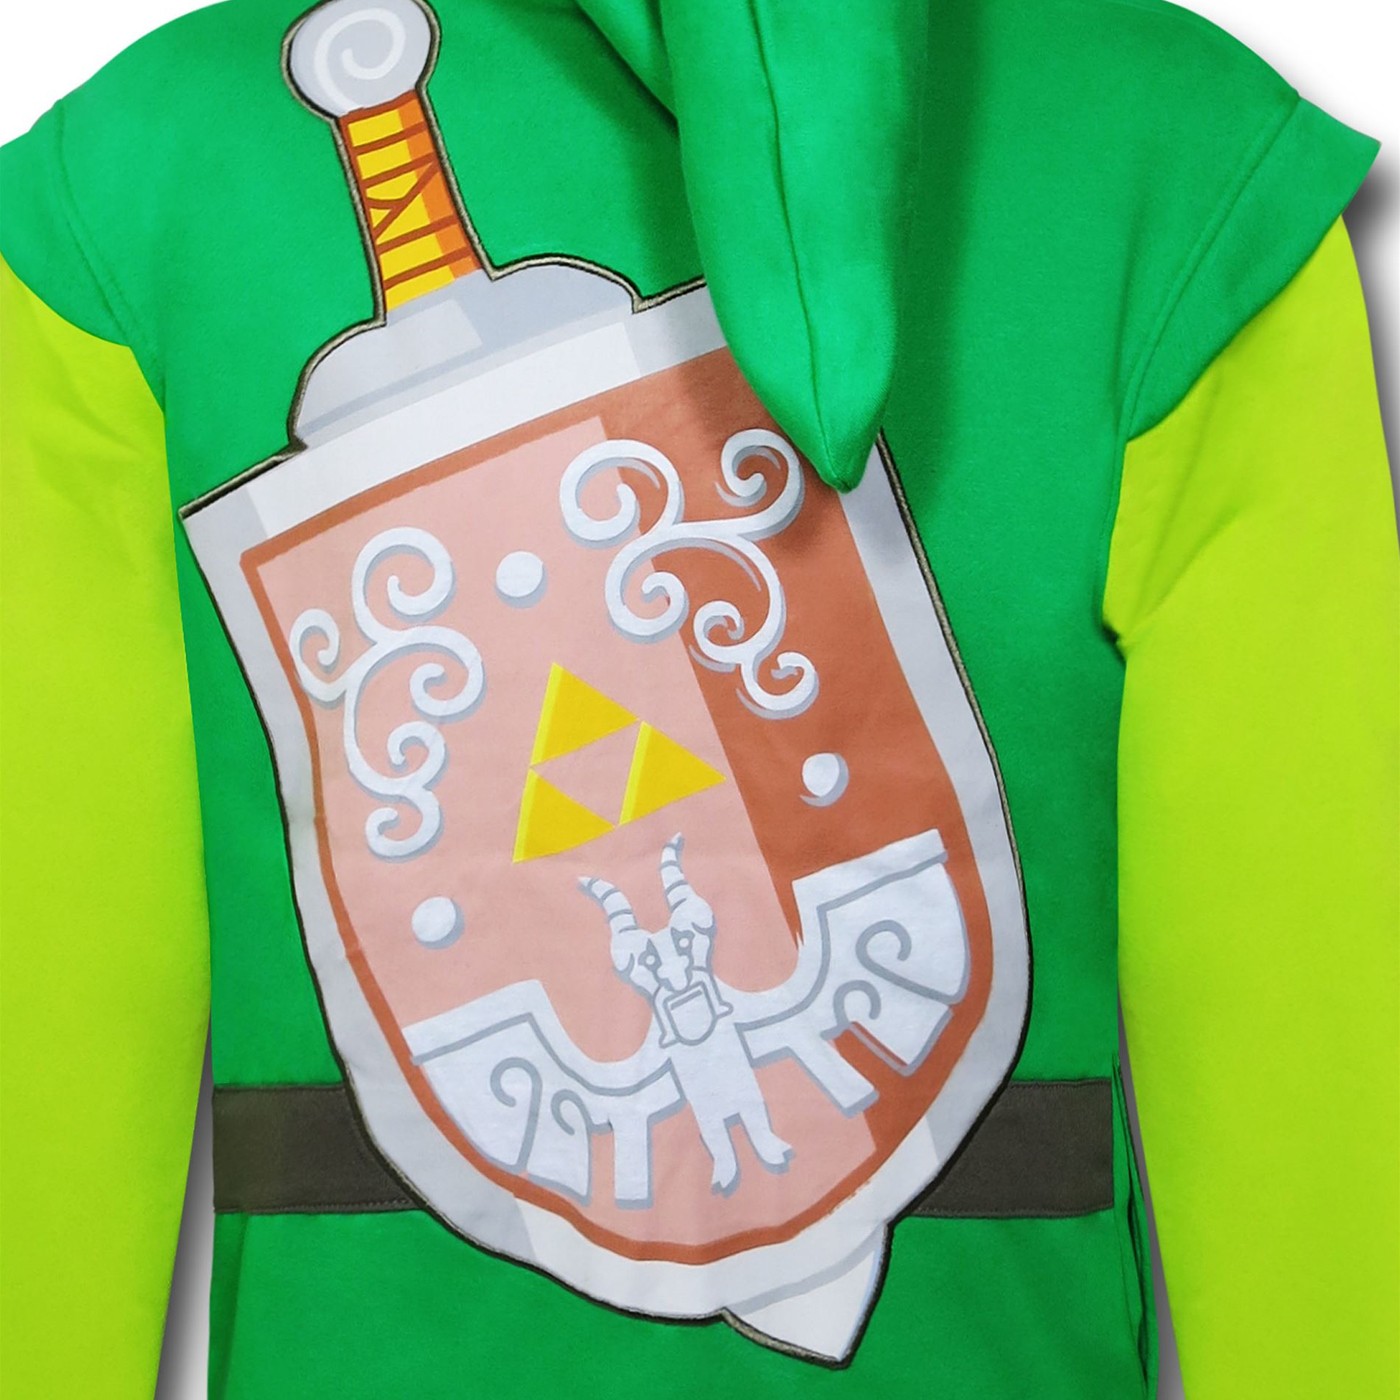 Legend of Zelda Link Costume Hoodie